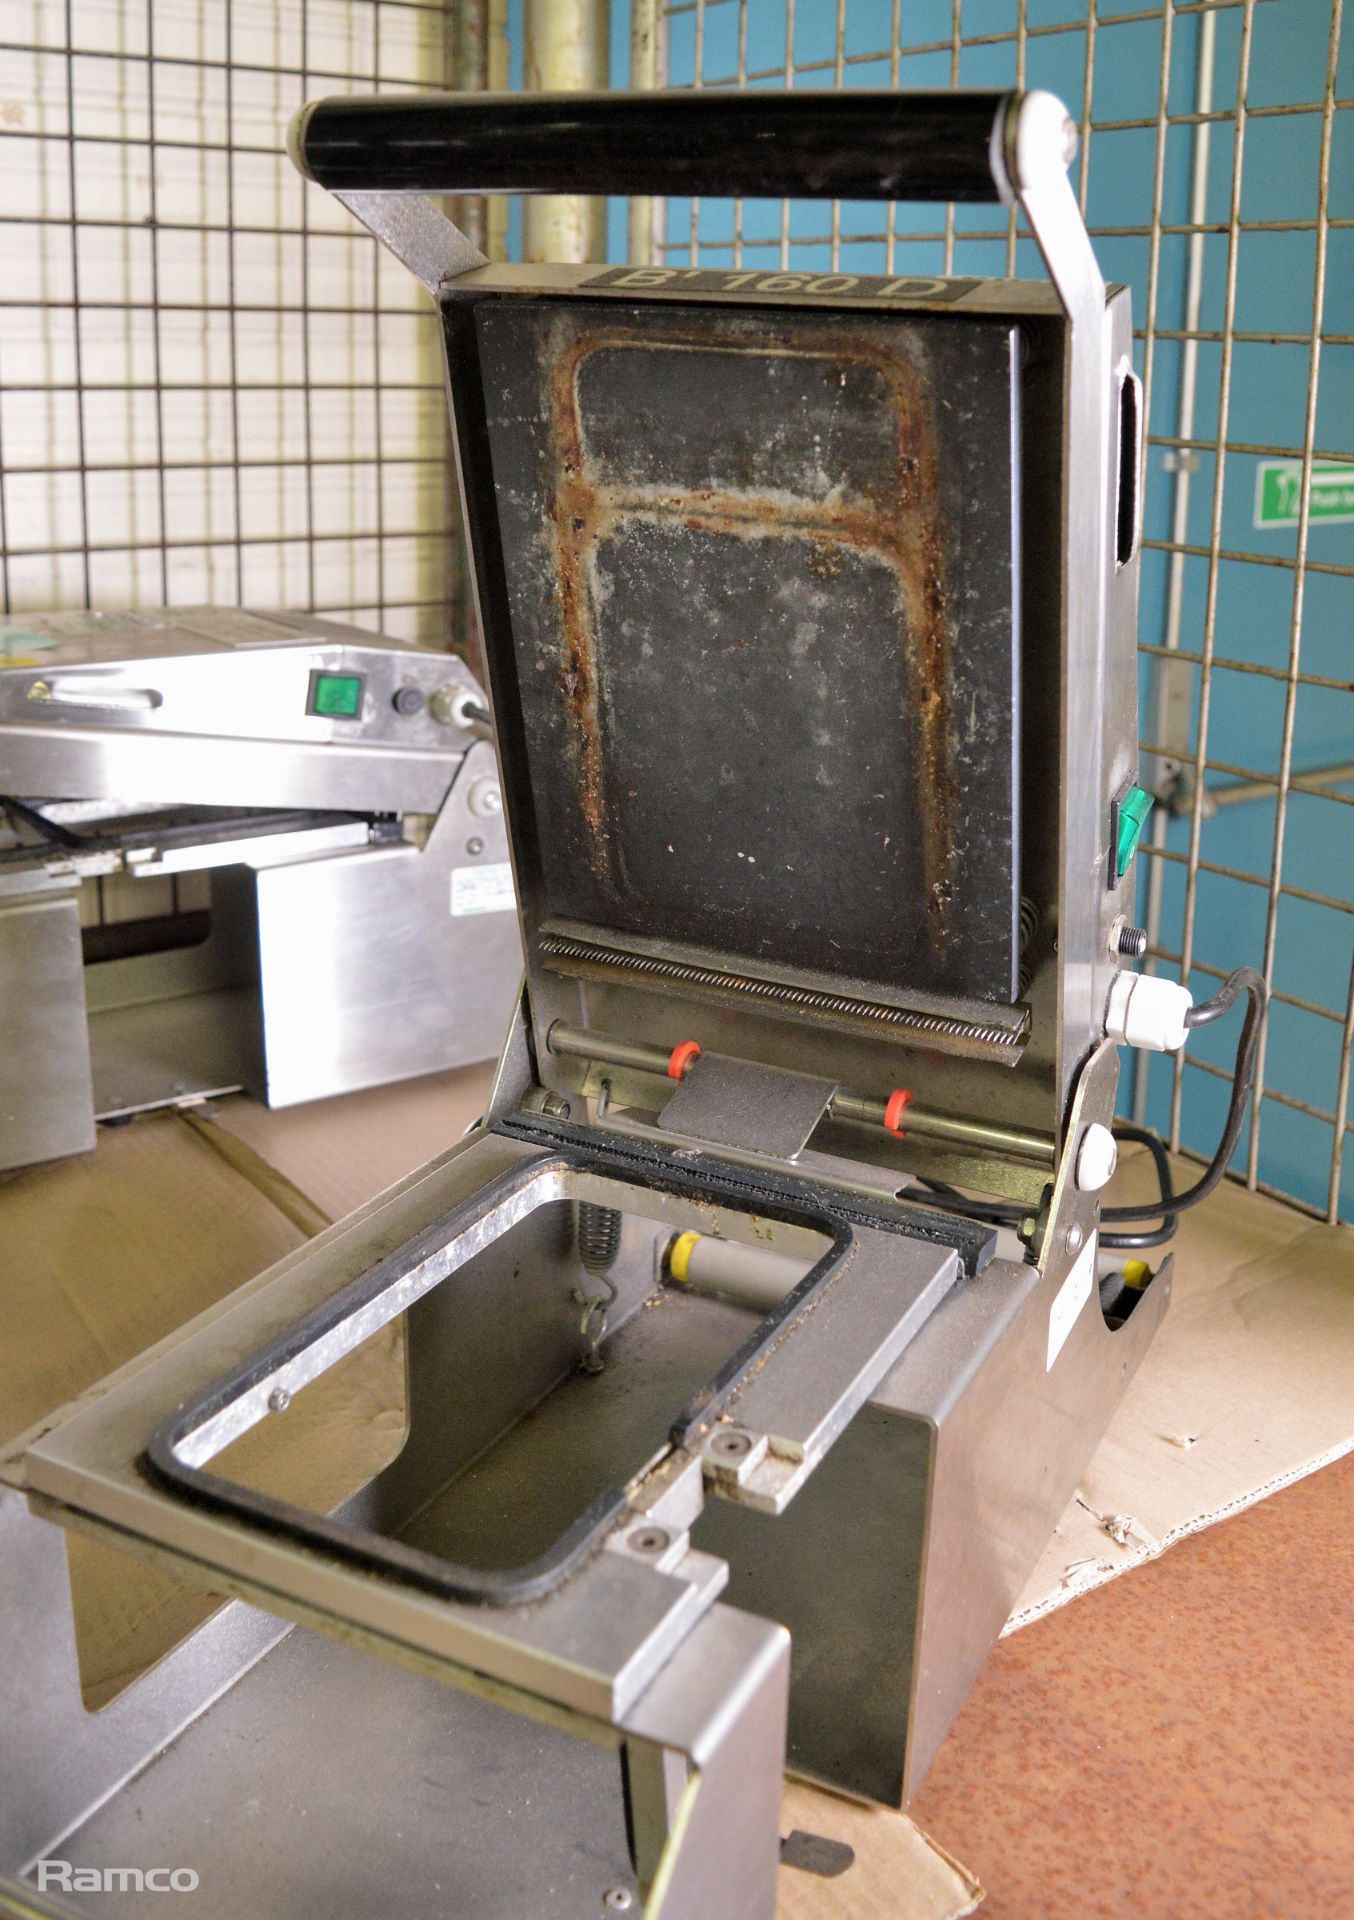 R H packing B 160 D tray sealing machine - Image 2 of 5